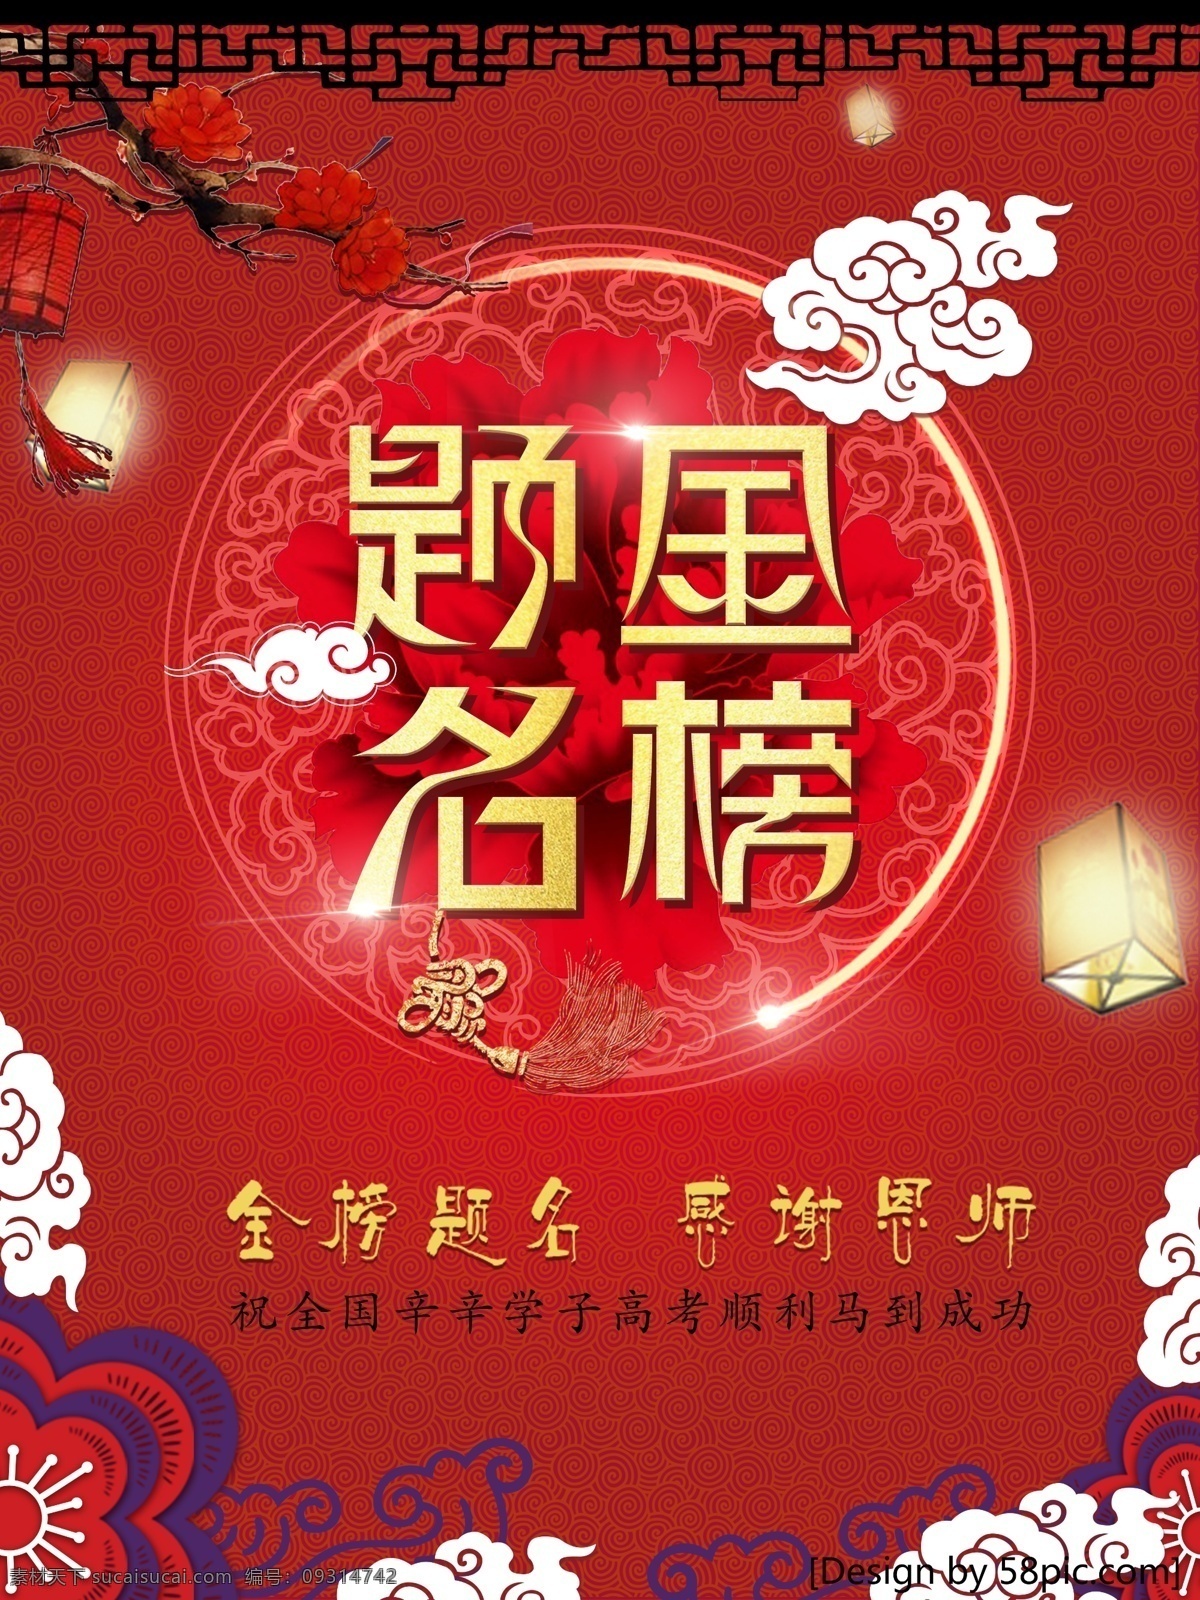 金榜 提名 文化 海报 金榜题名海报 金榜提名 红色 红色素材 psd素材 高考海报 中国风 红色背景素材